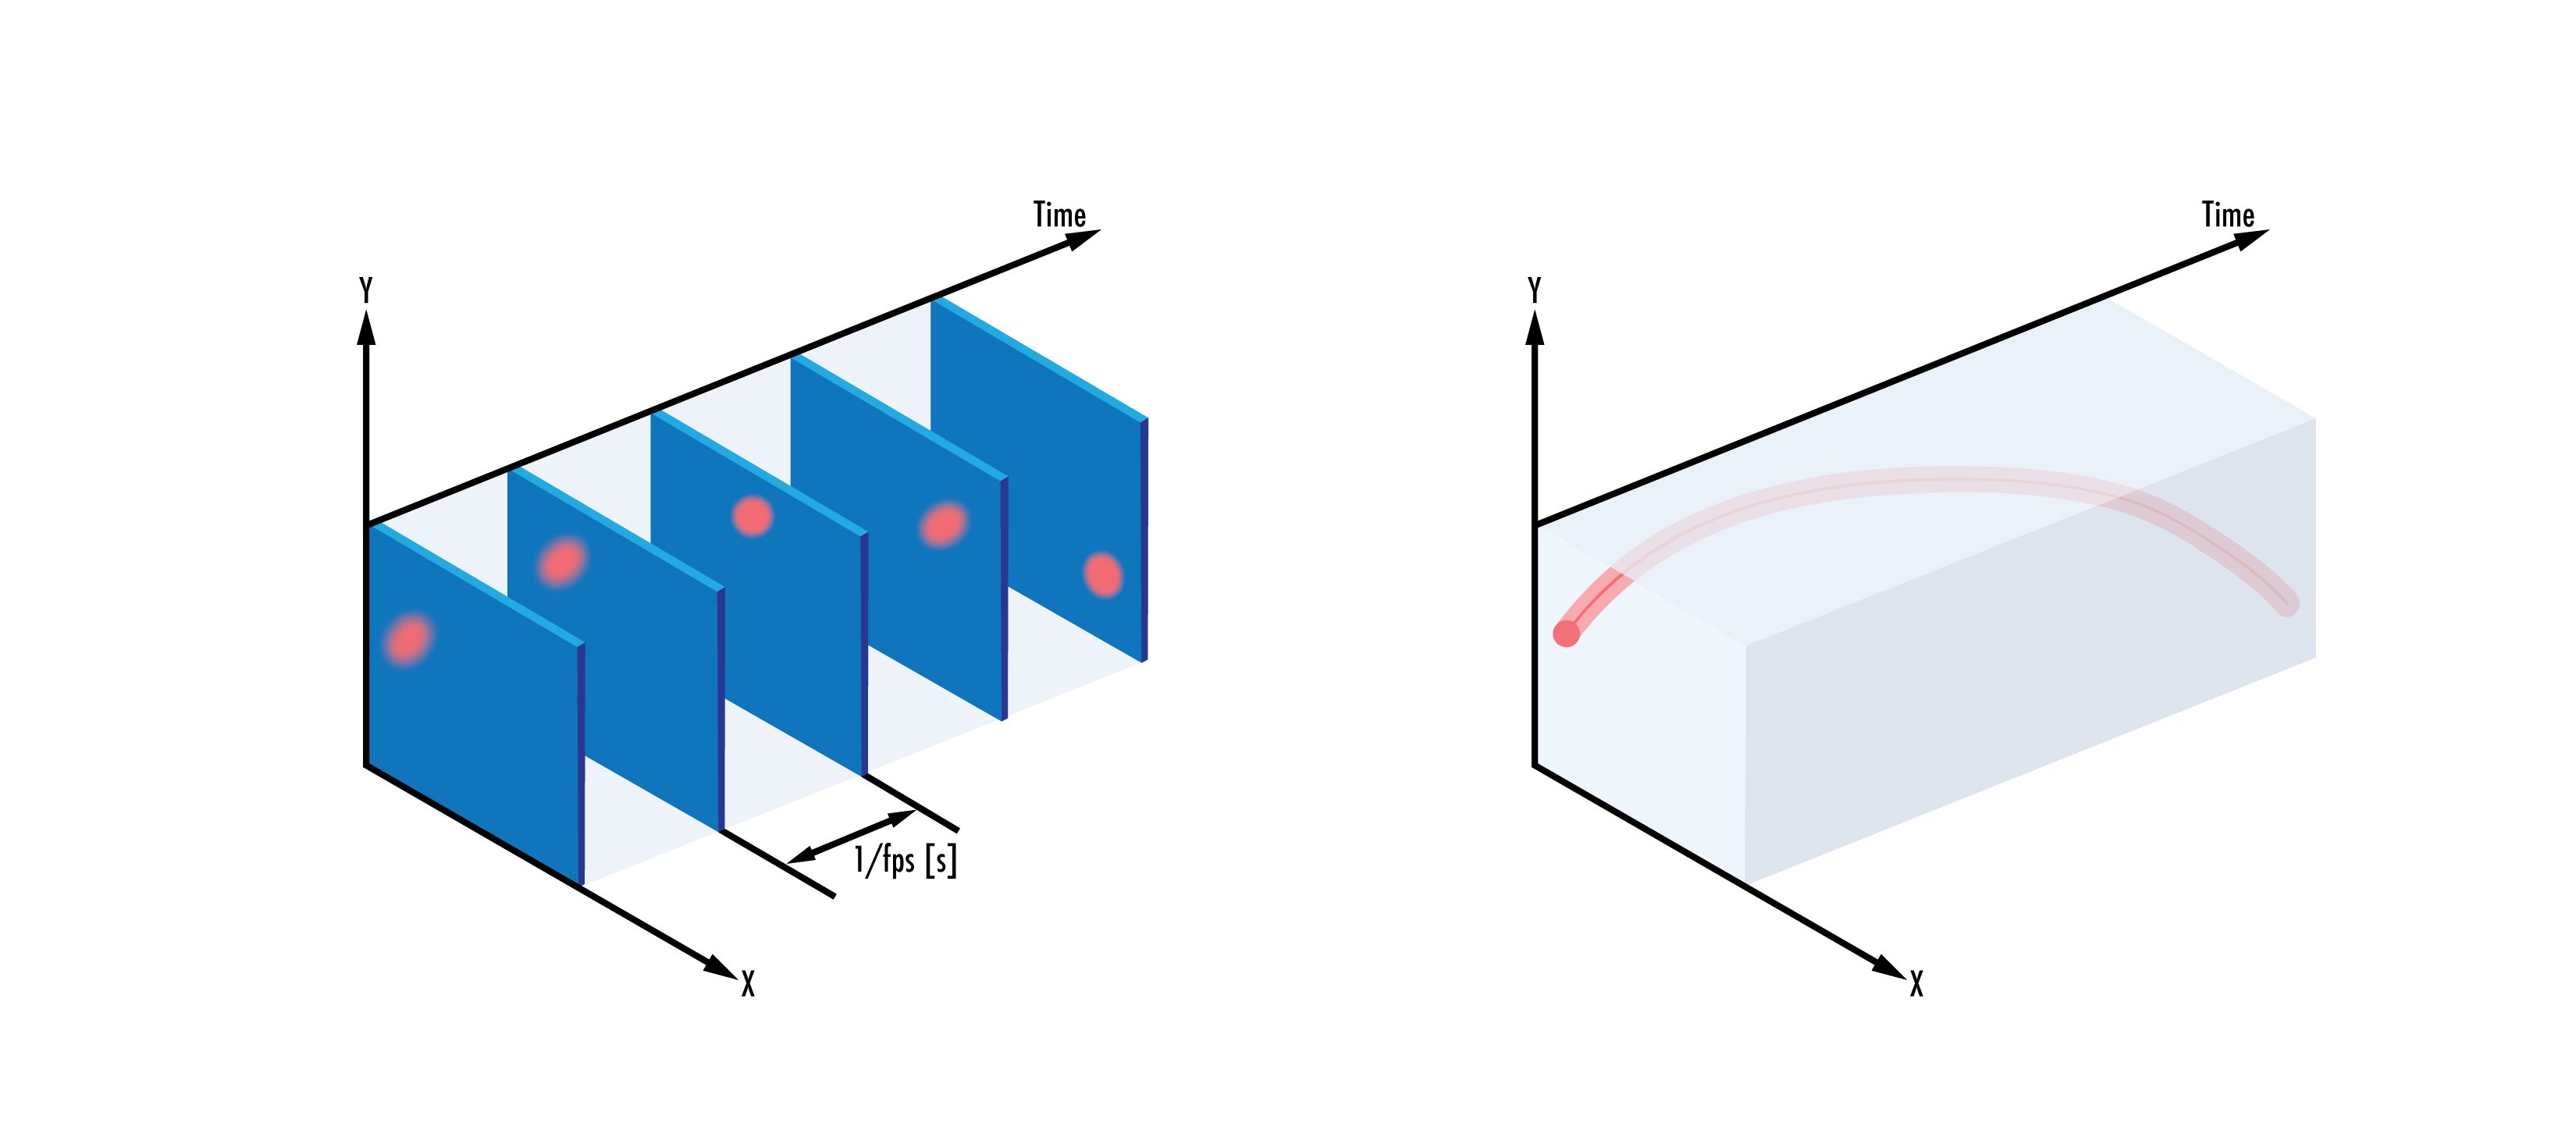 Herkömmliche Sensoren (links) zeichnen Bilder mit einer festen Rate auf, unabhängig von Änderungen am Objekt im Bildfeld, während ereignisbasierte Sensoren (rechts) Änderungen an einzelnen Pixeln in Abhängigkeit von der Erkennung einer Intensitätsänderung des Bildfeldes erfassen.